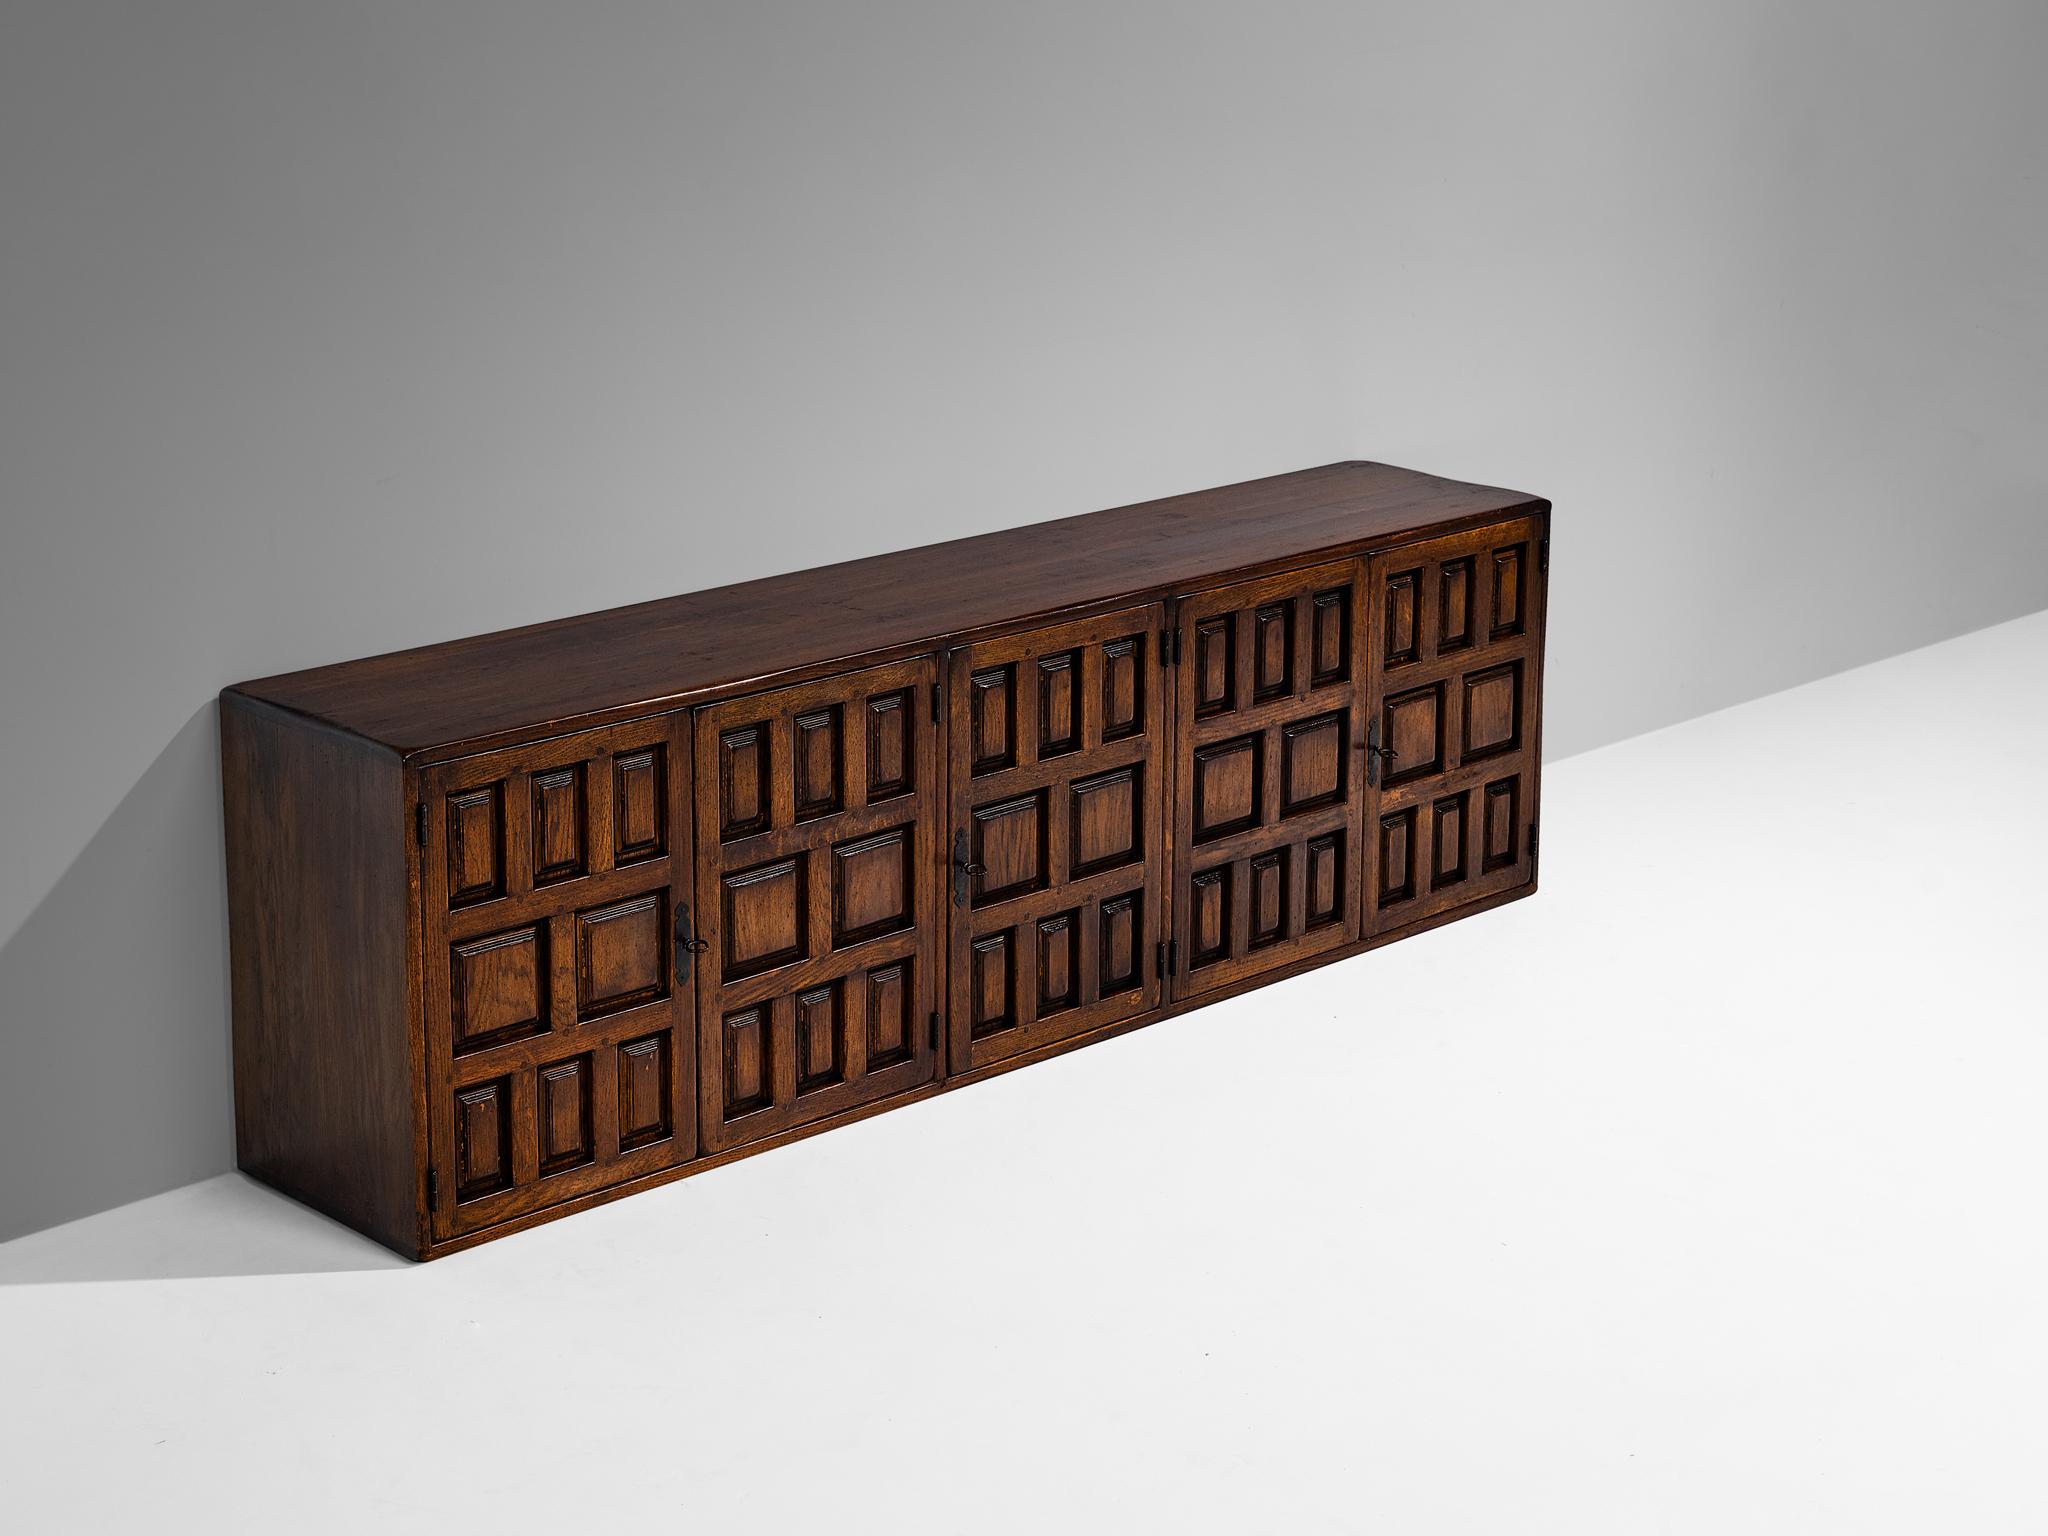 Buffet, frêne teinté, fer, Espagne, 1960

Ce meuble provient d'Espagne et présente les caractéristiques décoratives du design des meubles castillans du XVIe siècle. Les formes géométriques sculptées sur les panneaux de porte attirent immédiatement